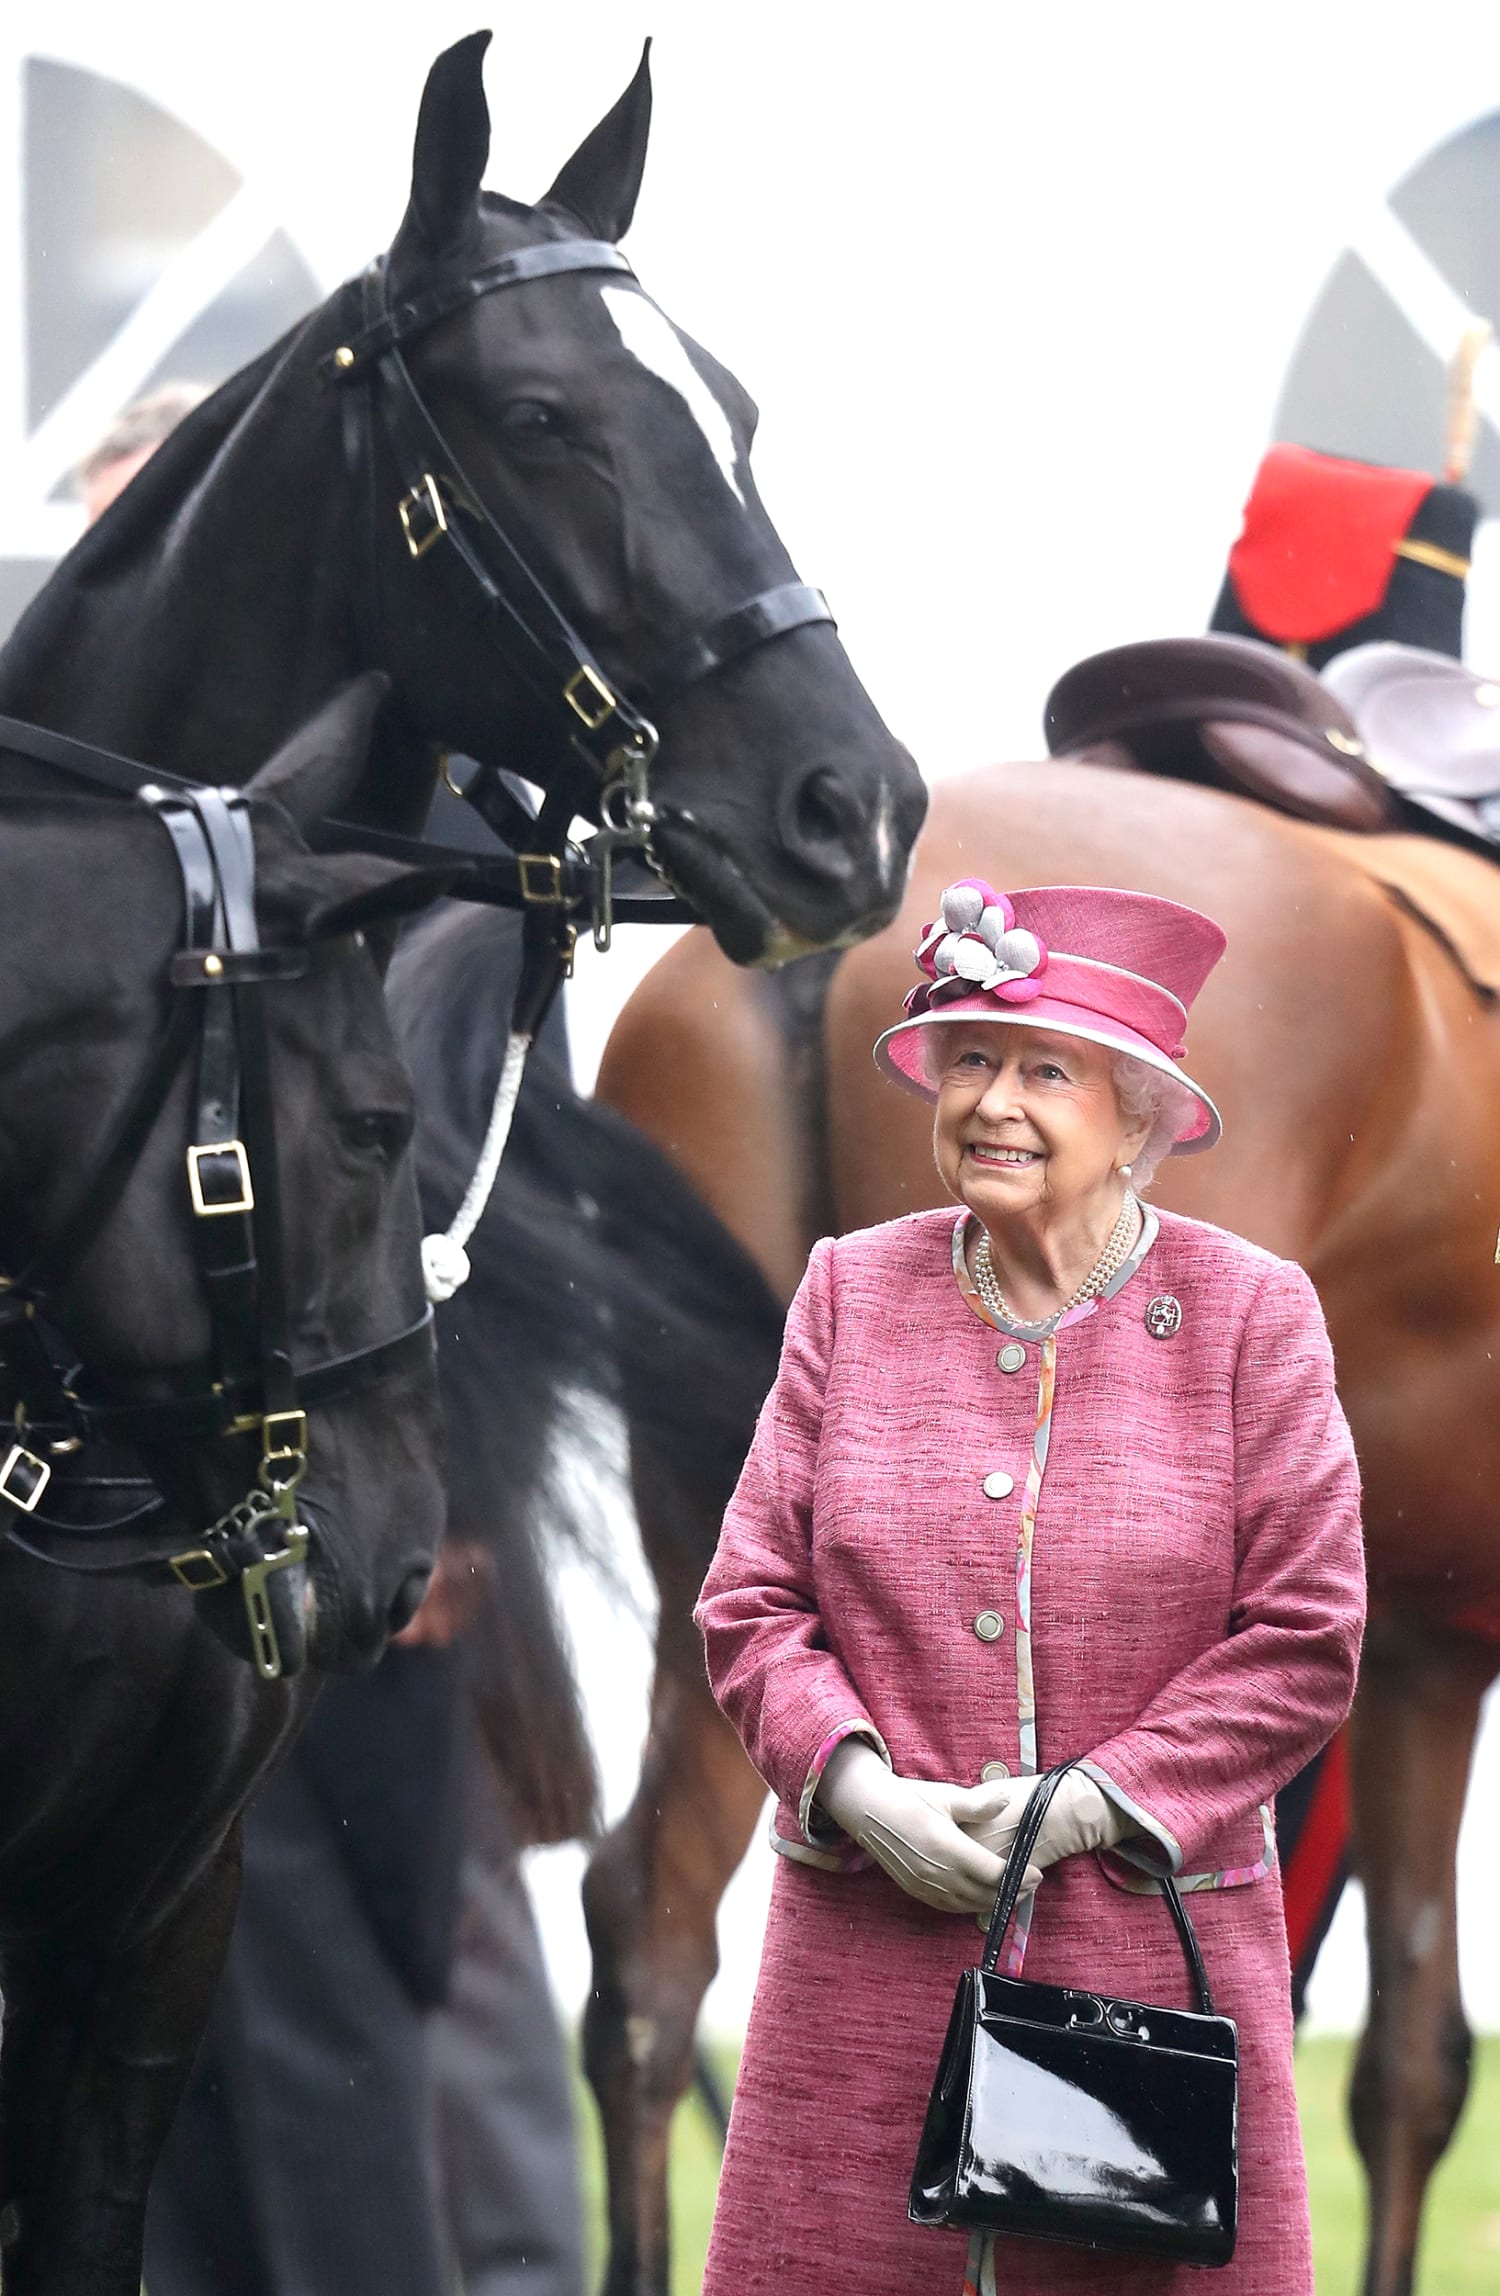 Queen Elizabeth's Favorite Launer Handbag for 50 Years